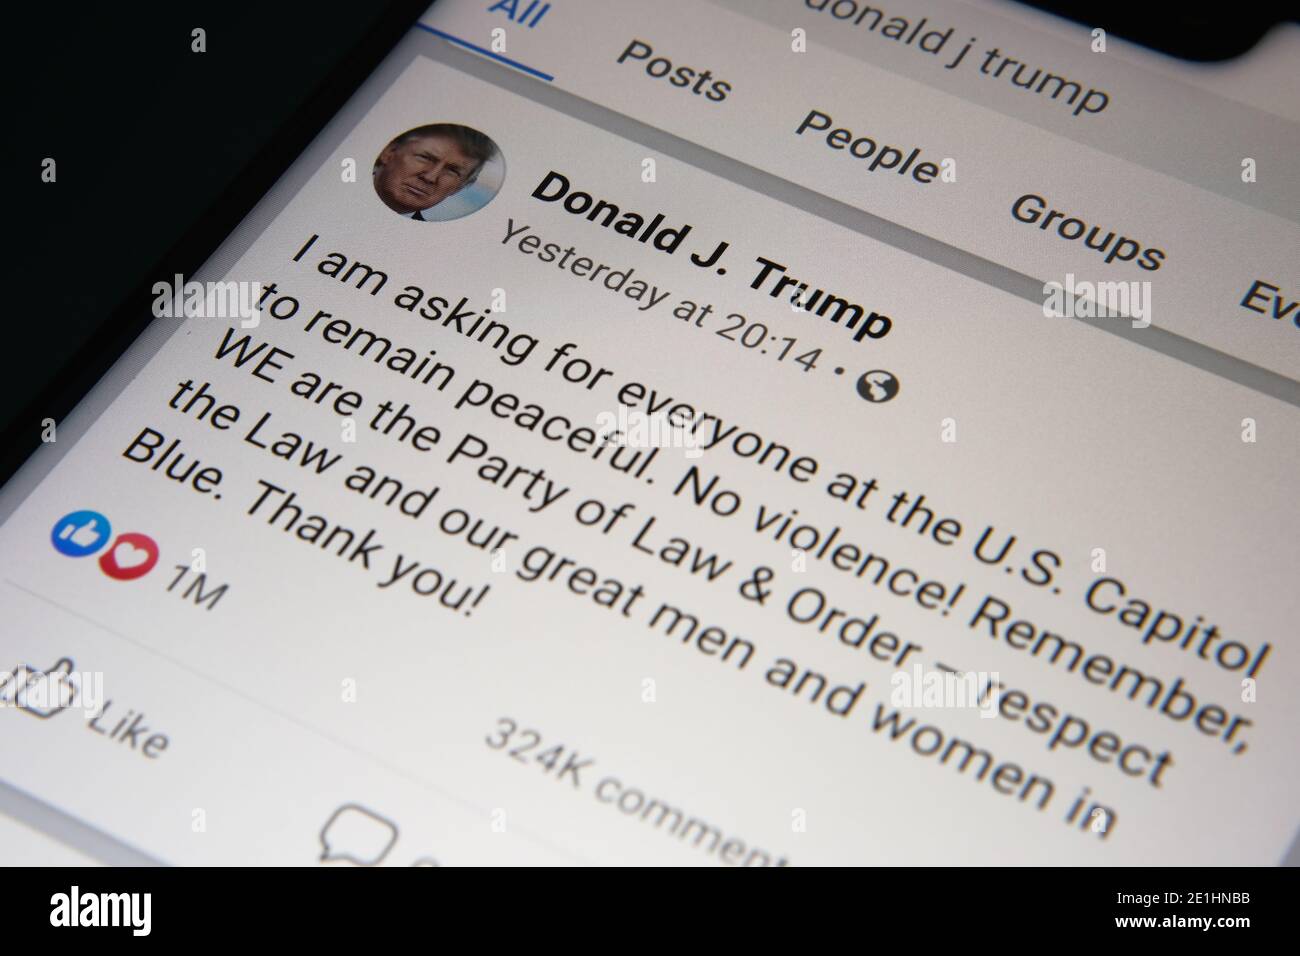 Il post di Donald Trump sulla violenza nel Campidoglio degli Stati Uniti pubblicato sullo schermo. Che è stato l'ultimo post prima che il suo account bloccato. Foto Stock